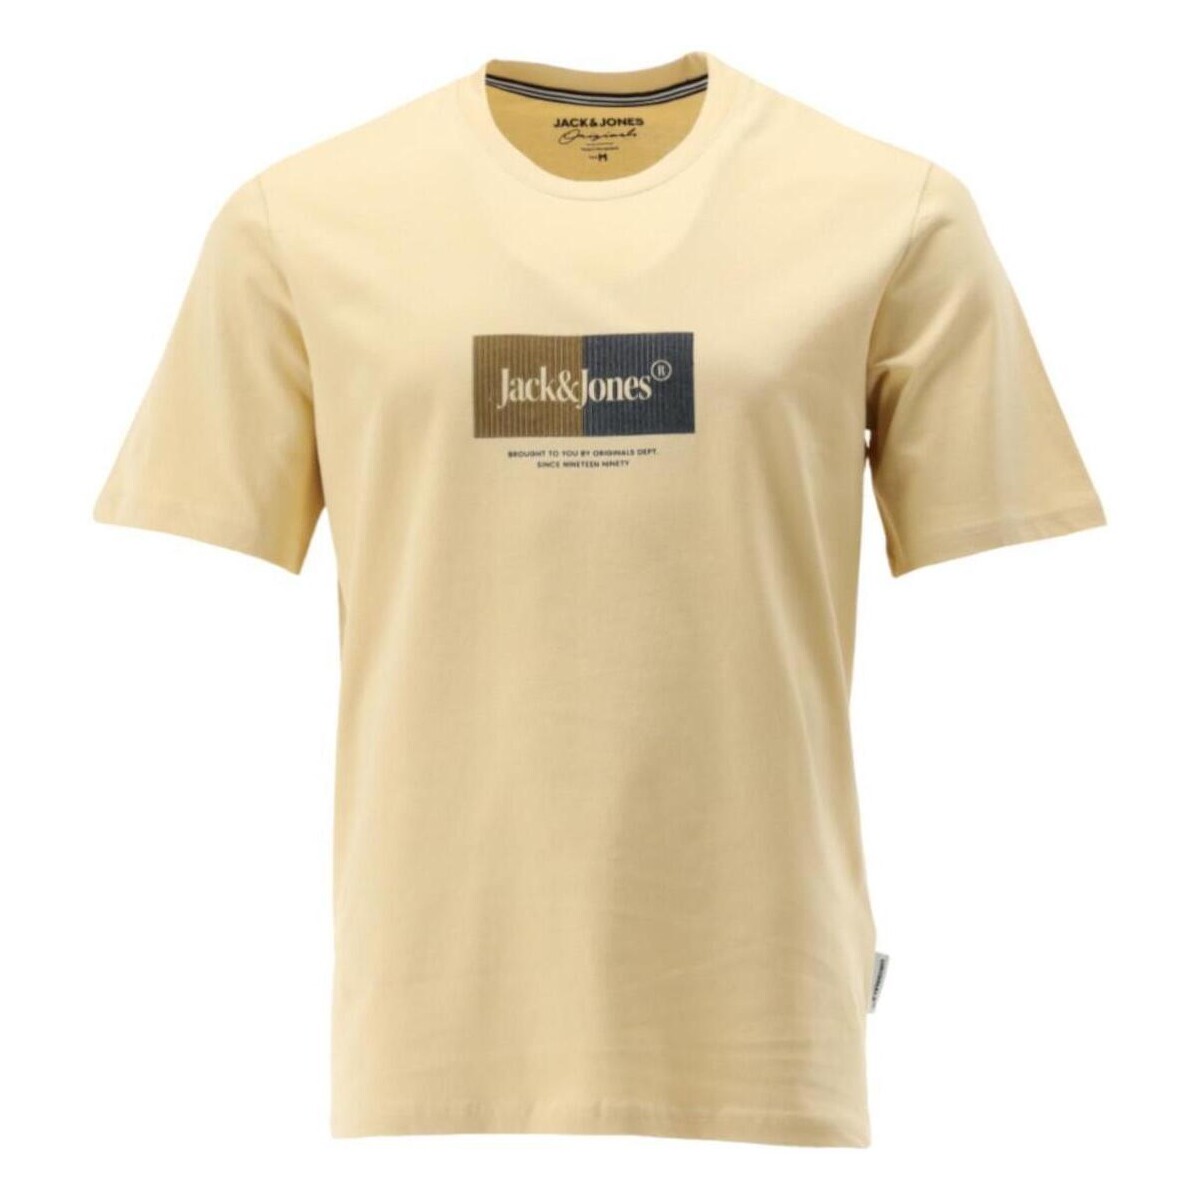 tekstylia Męskie T-shirty z krótkim rękawem Jack & Jones  Żółty